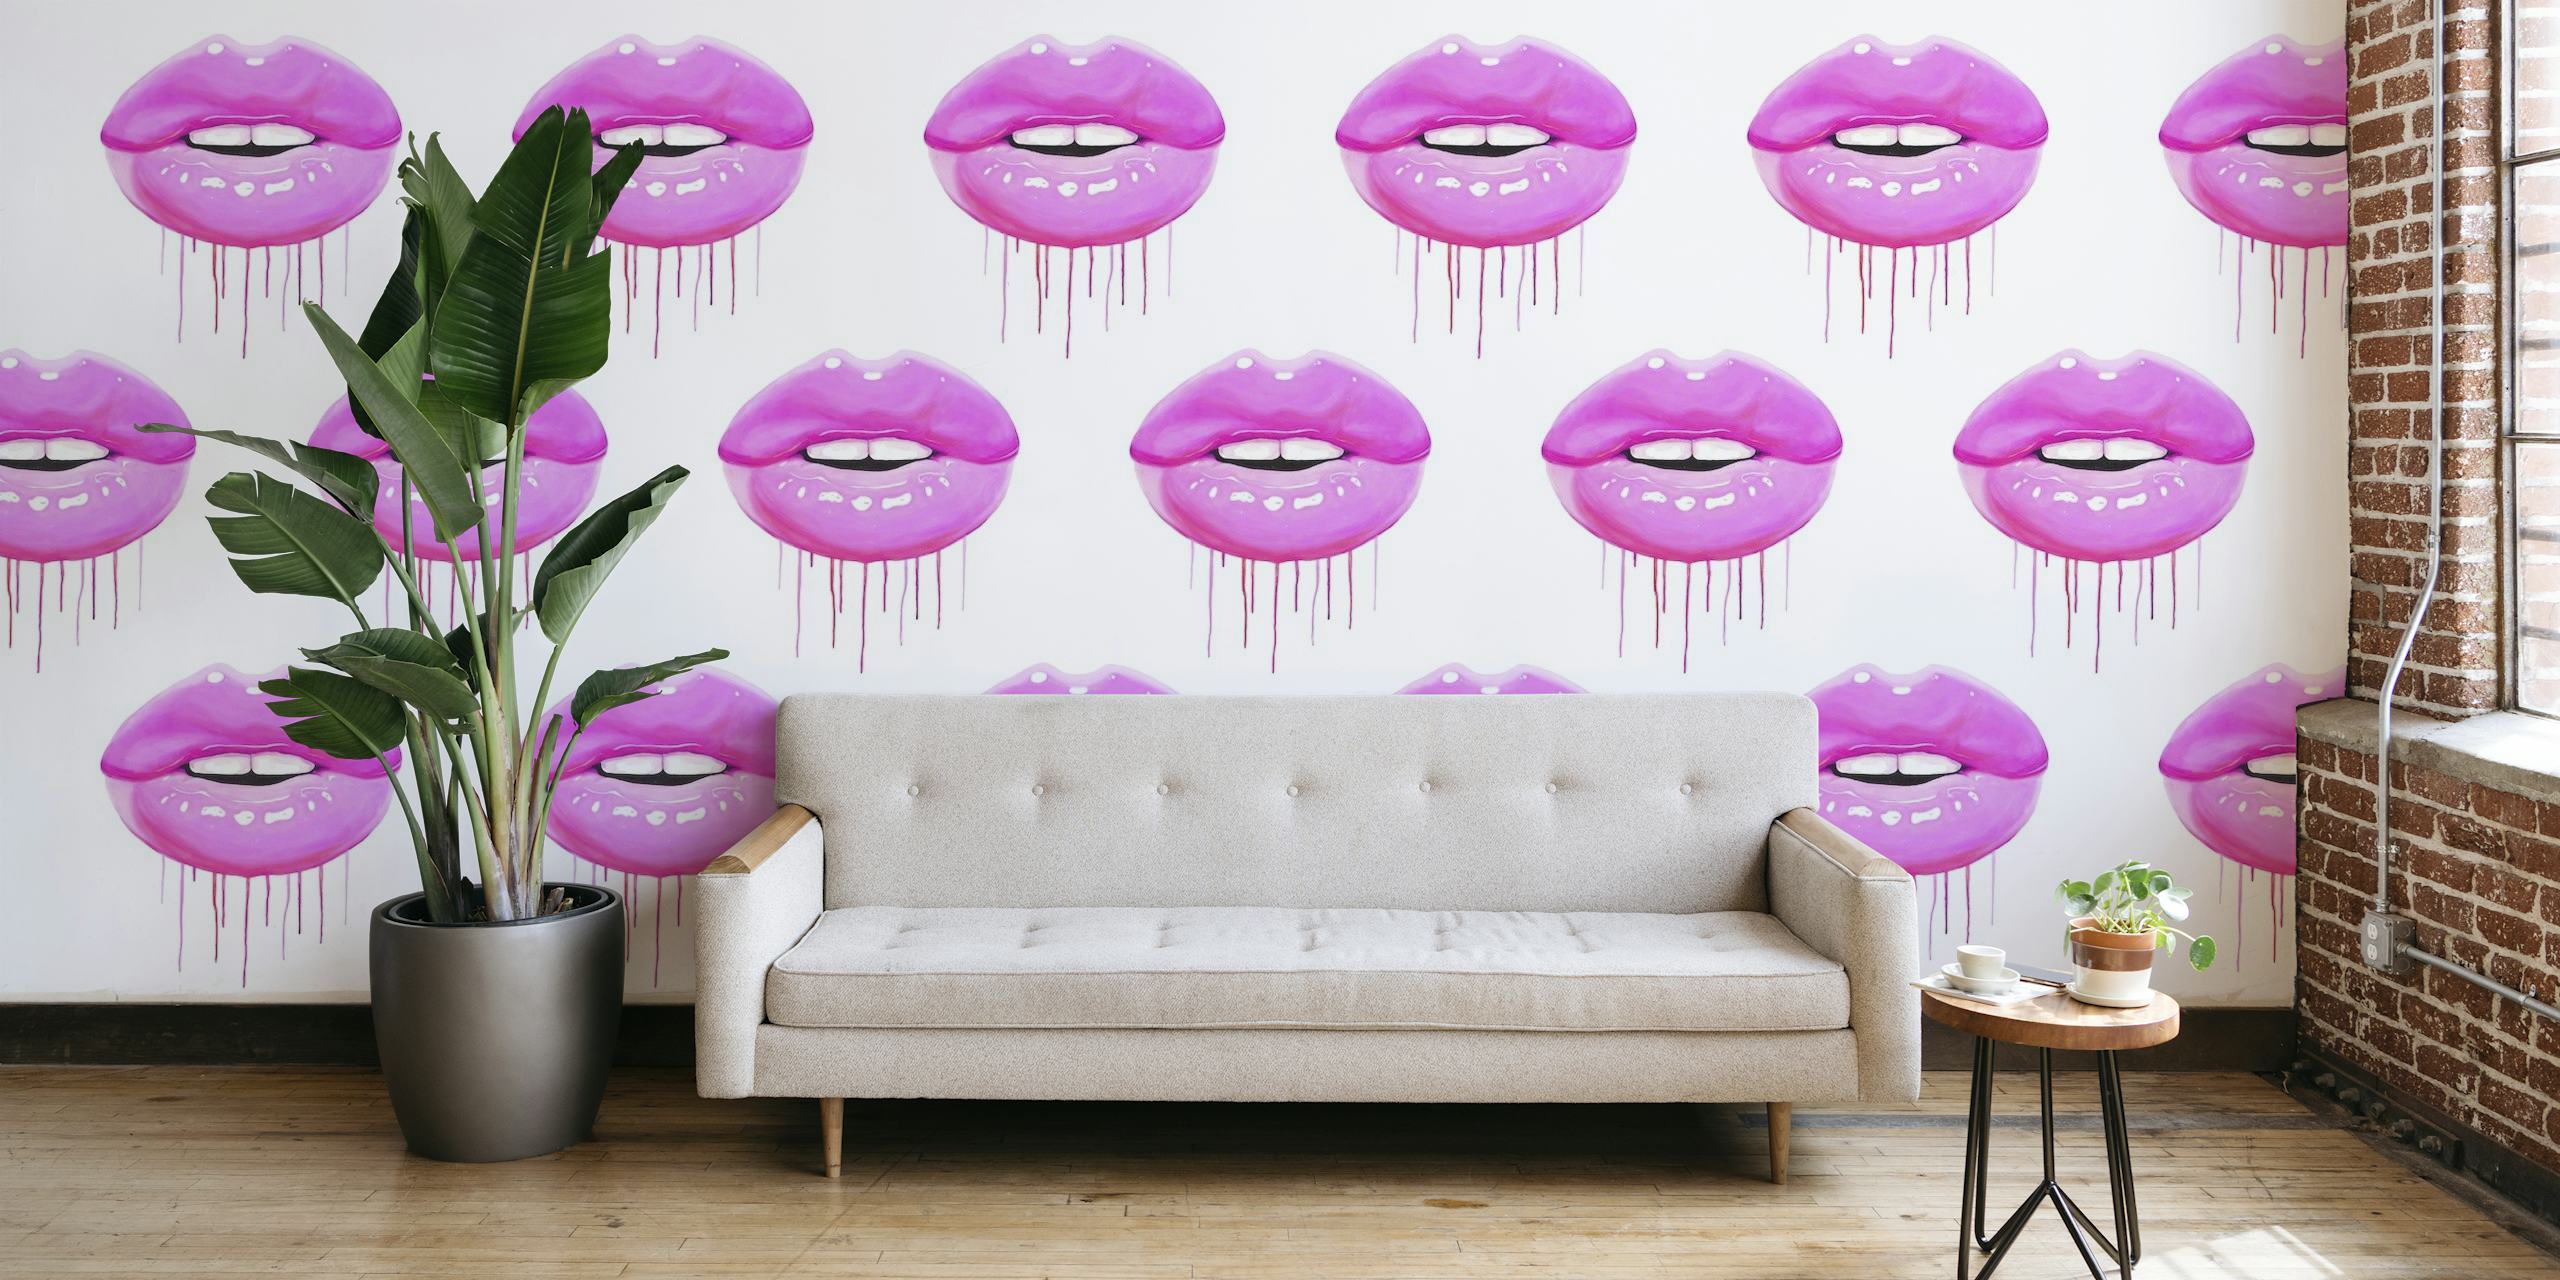 Pink lips pattern behang